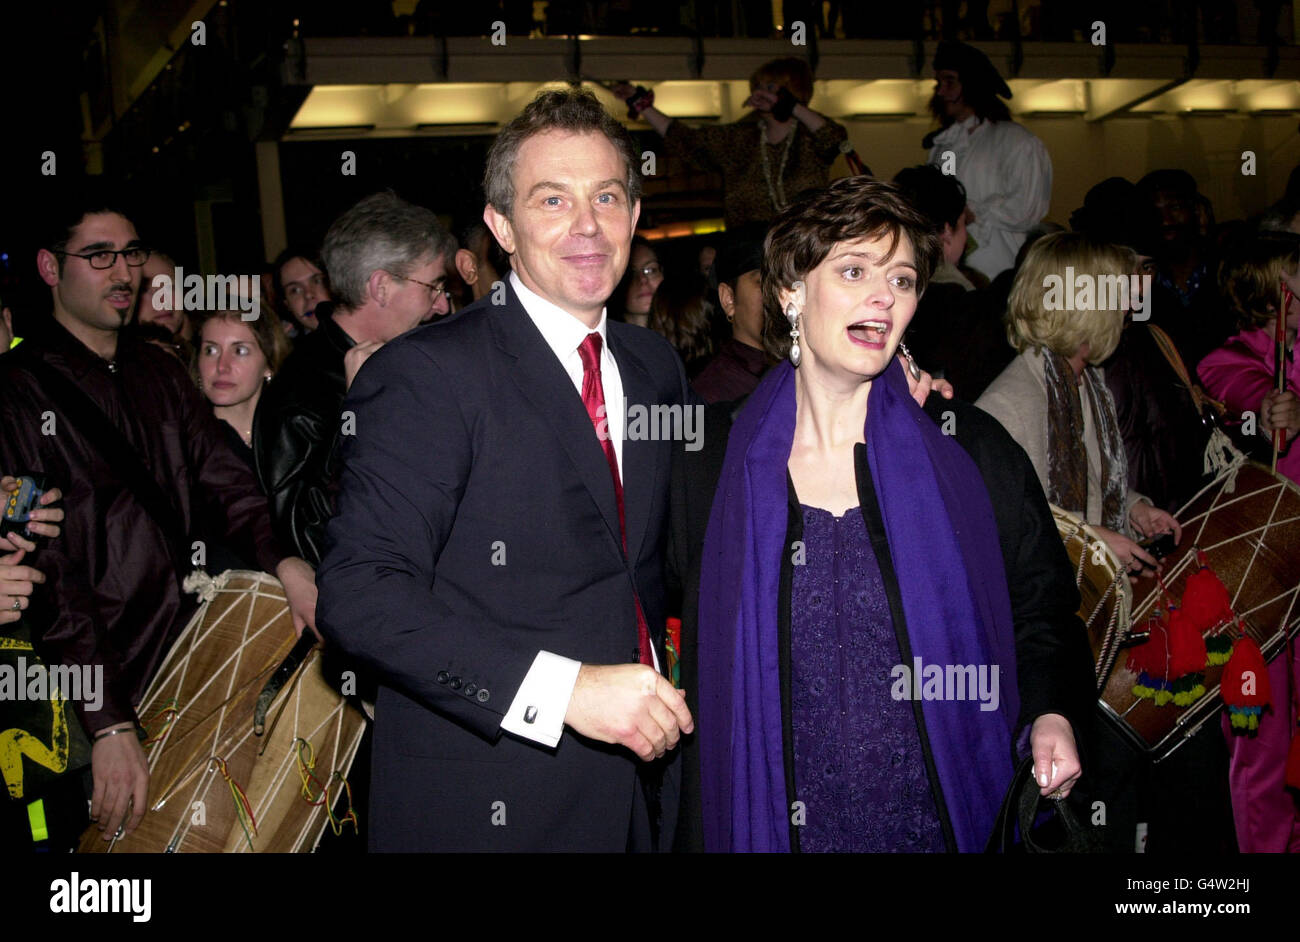 Premierminister Tony Blair trifft in Begleitung seiner Frau Cherie am Millennium Dome in Greenwich in London ein, um den Dom am Silvesterabend zu öffnen, der das Herzstück der britischen Millenniumsfeiern bilden wird. Stockfoto